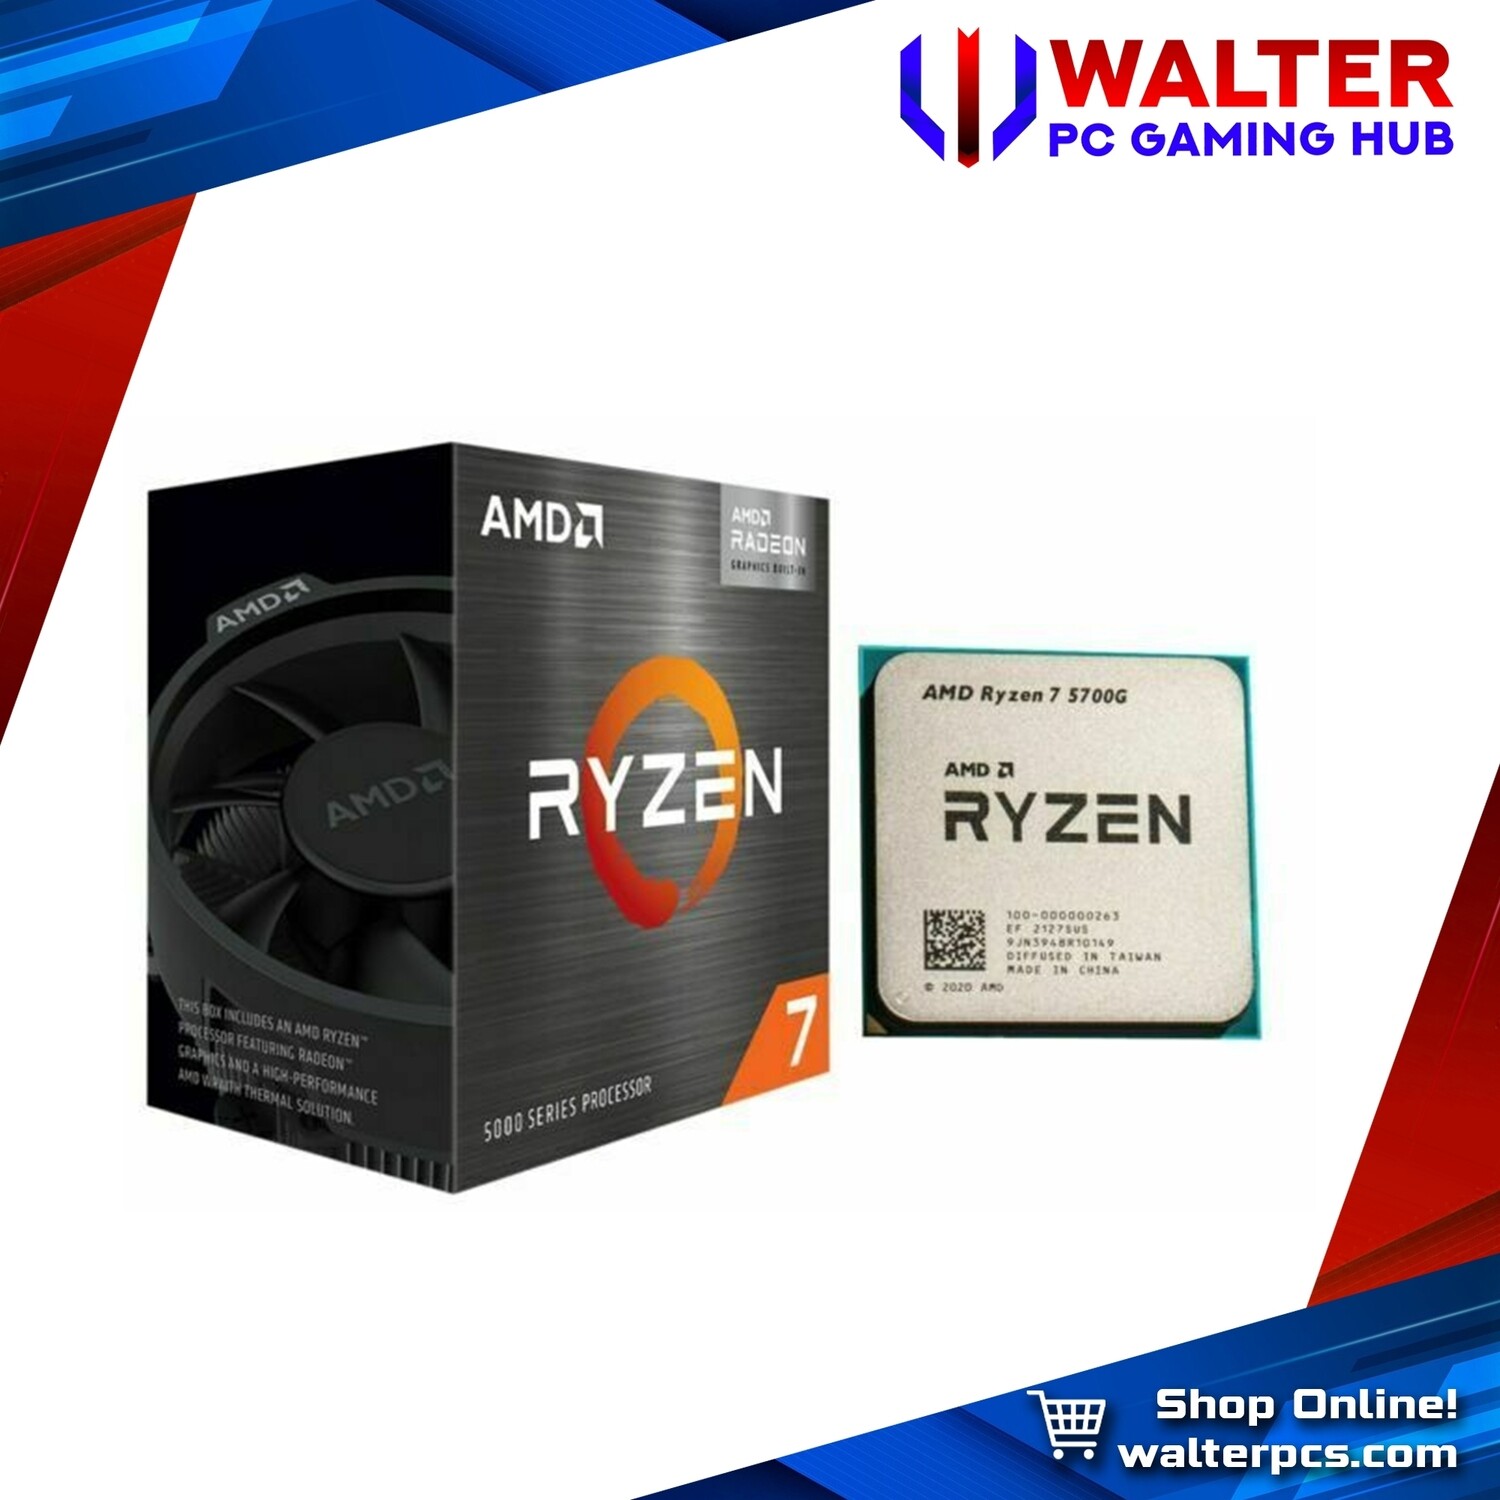 AMD Ryzen 7 5700G | 3.8 GHz | 8-core 16-thread